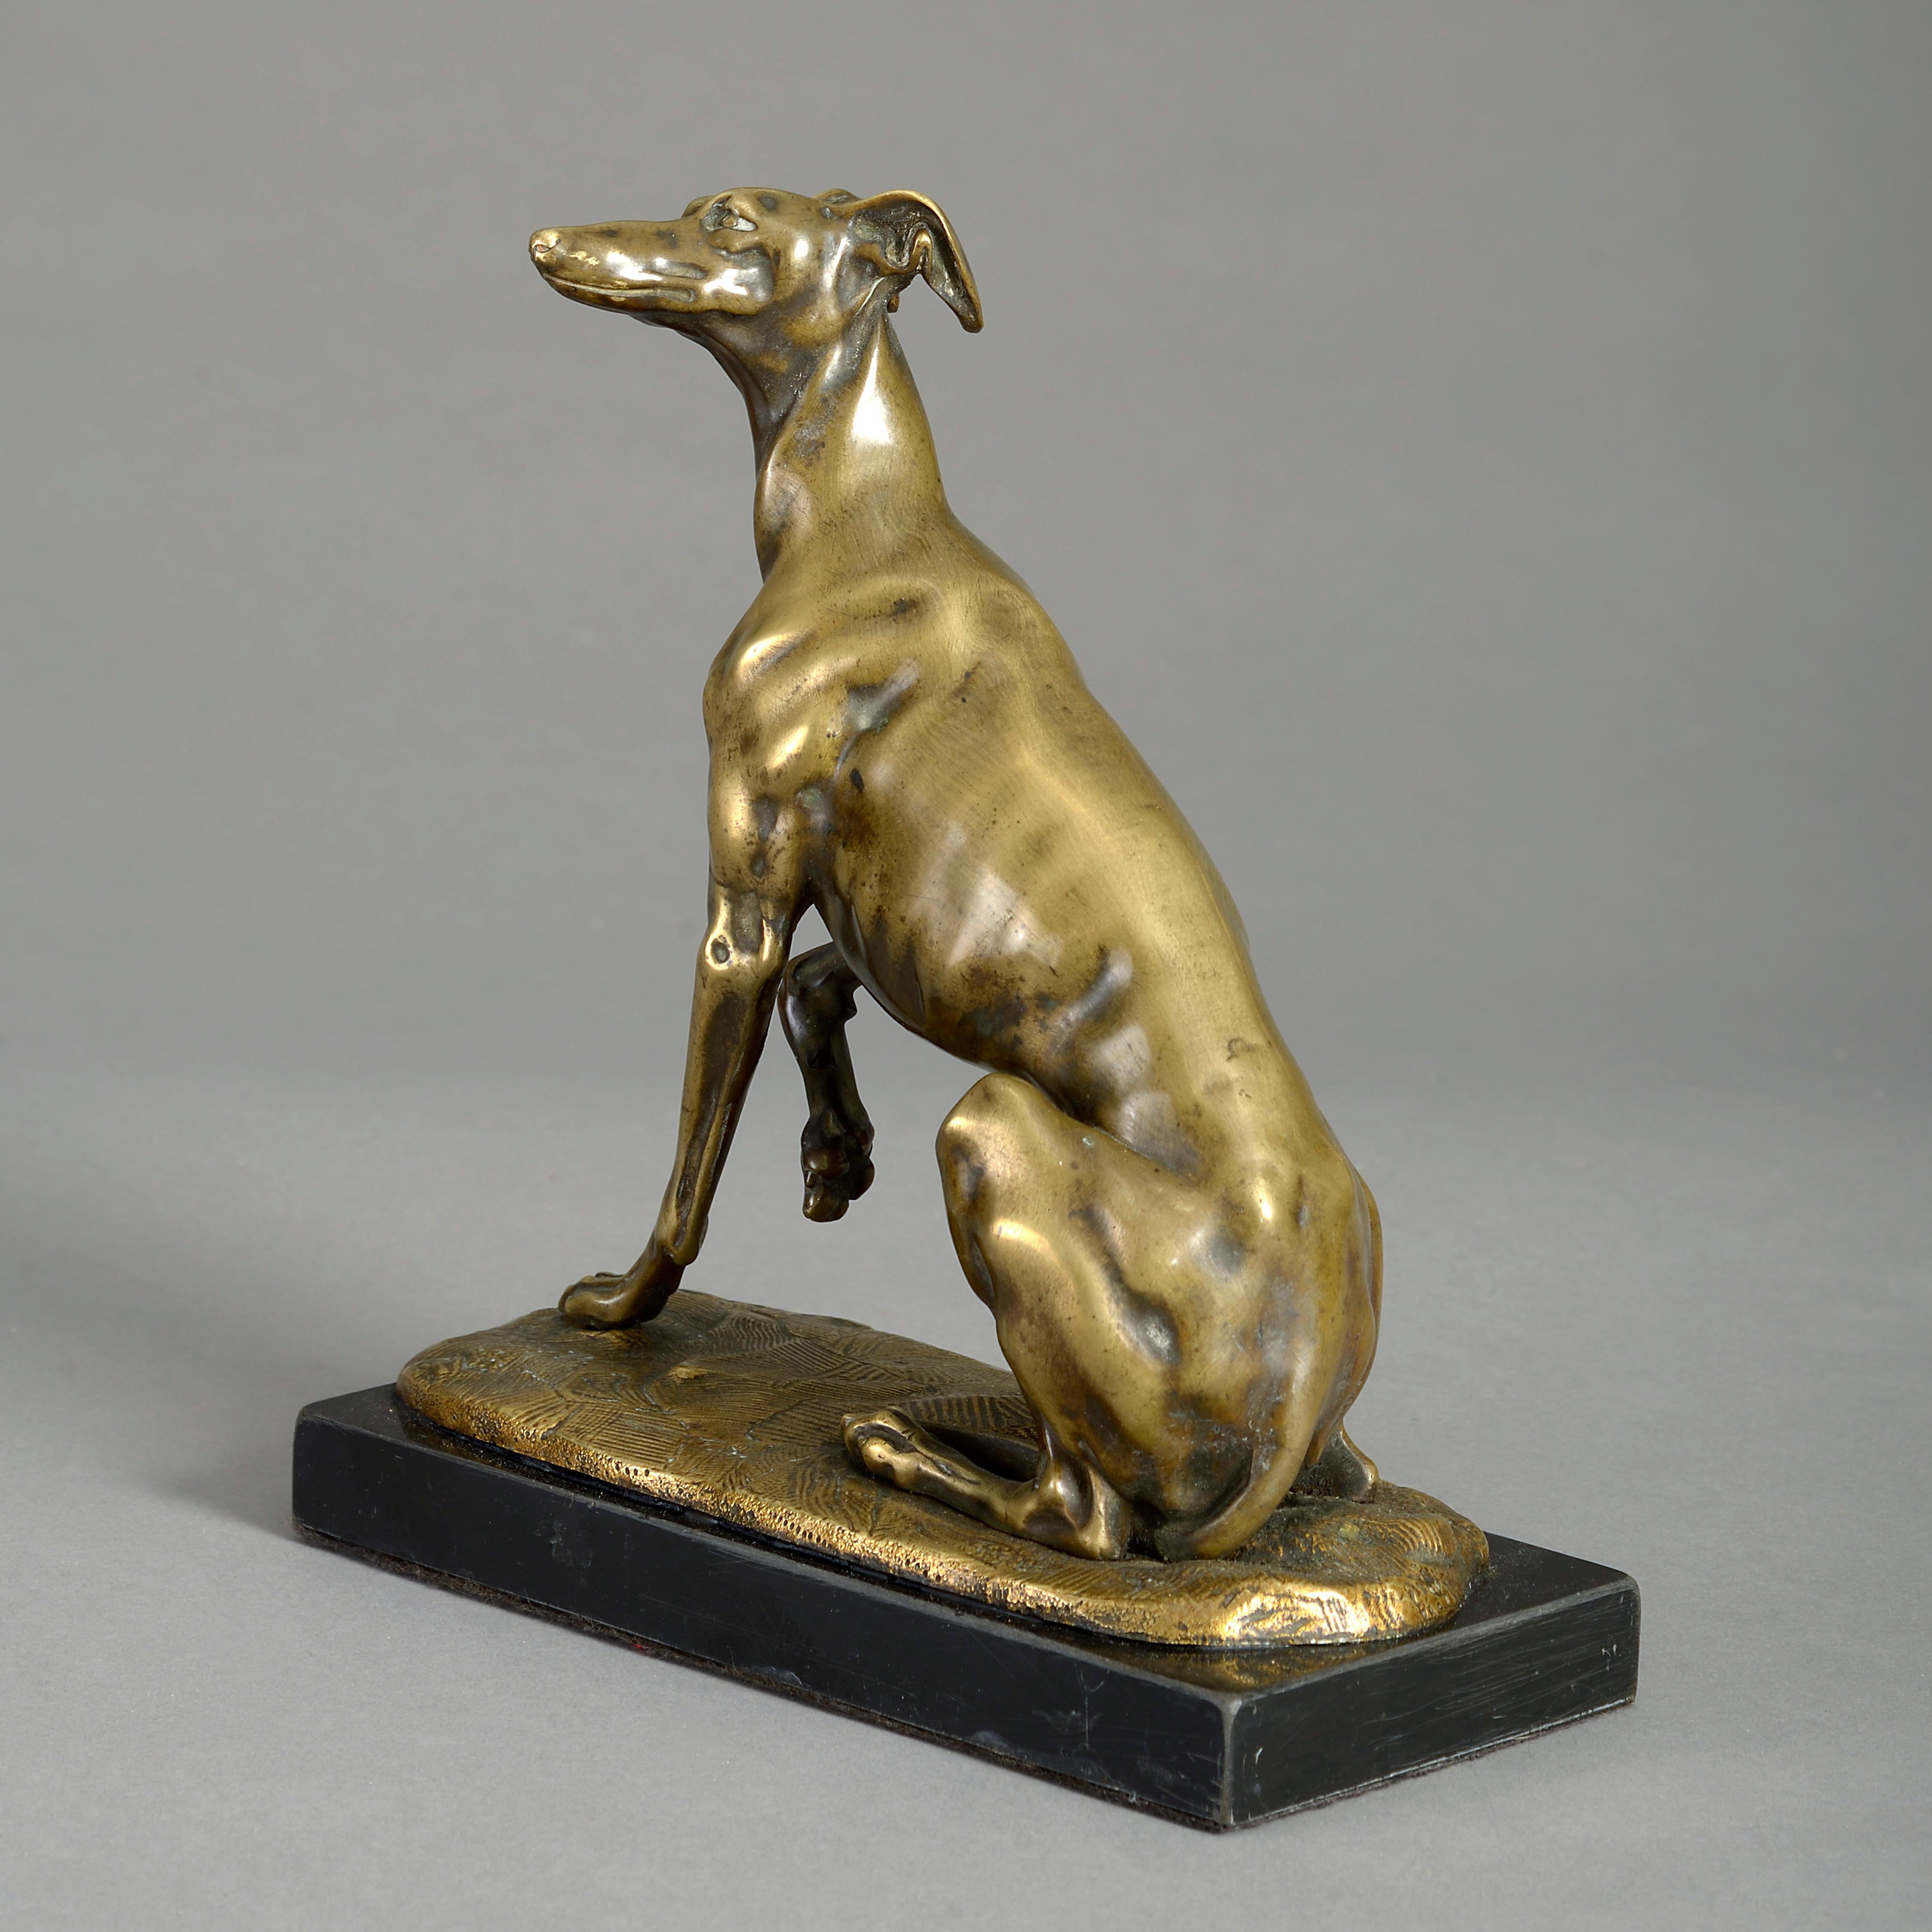 Ein fein gegossener Bronze-Windhund aus dem frühen 19. Jahrhundert, von guter Farbe, sitzend modelliert und auf einem Sockel aus schwarzem Marmor aufgestellt.
 
  